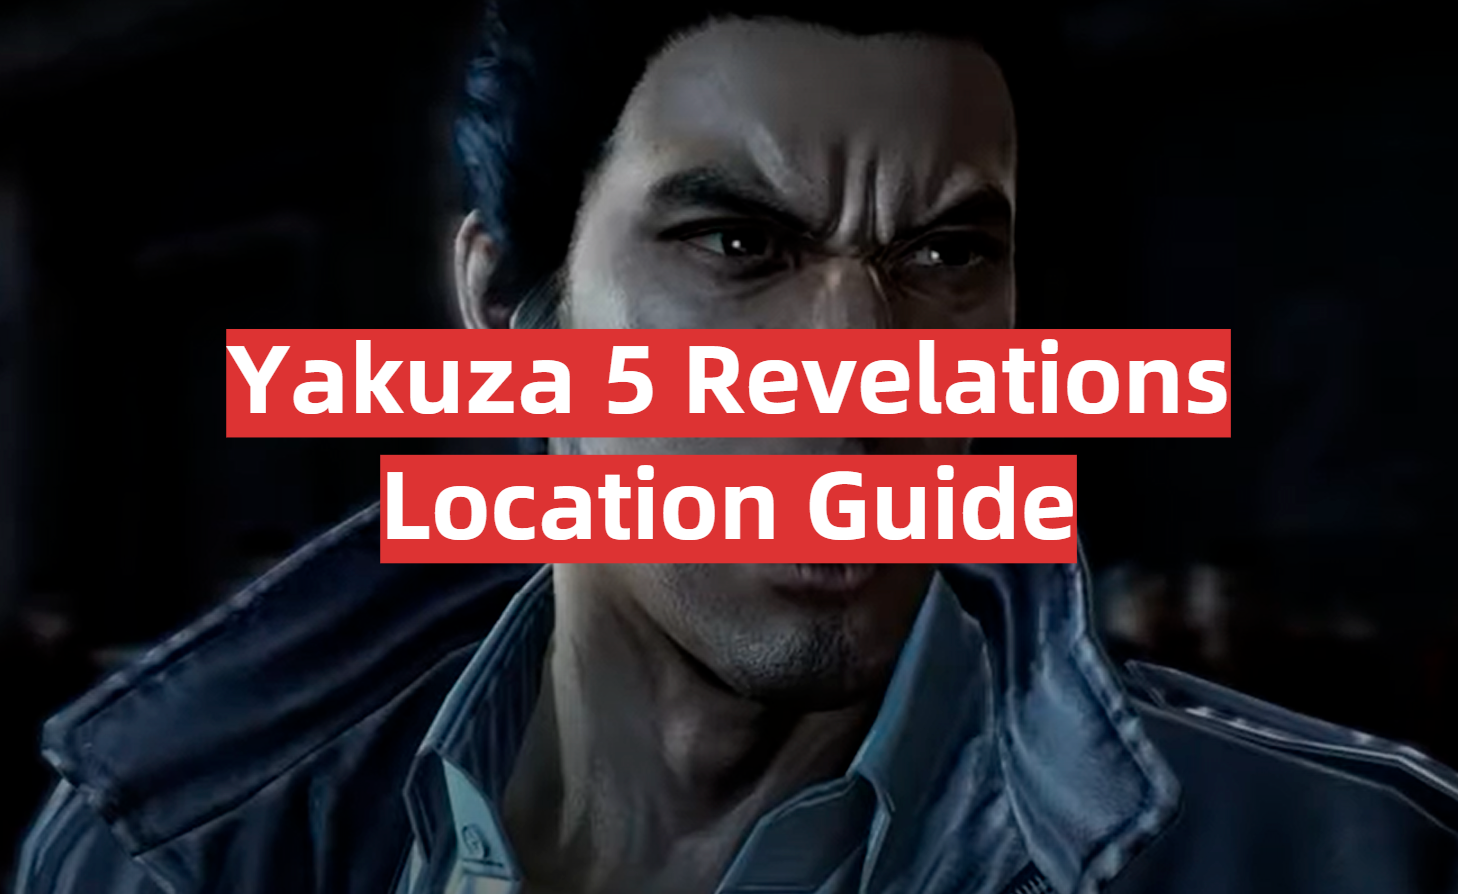 Yakuza 5 Revelations Location Guide